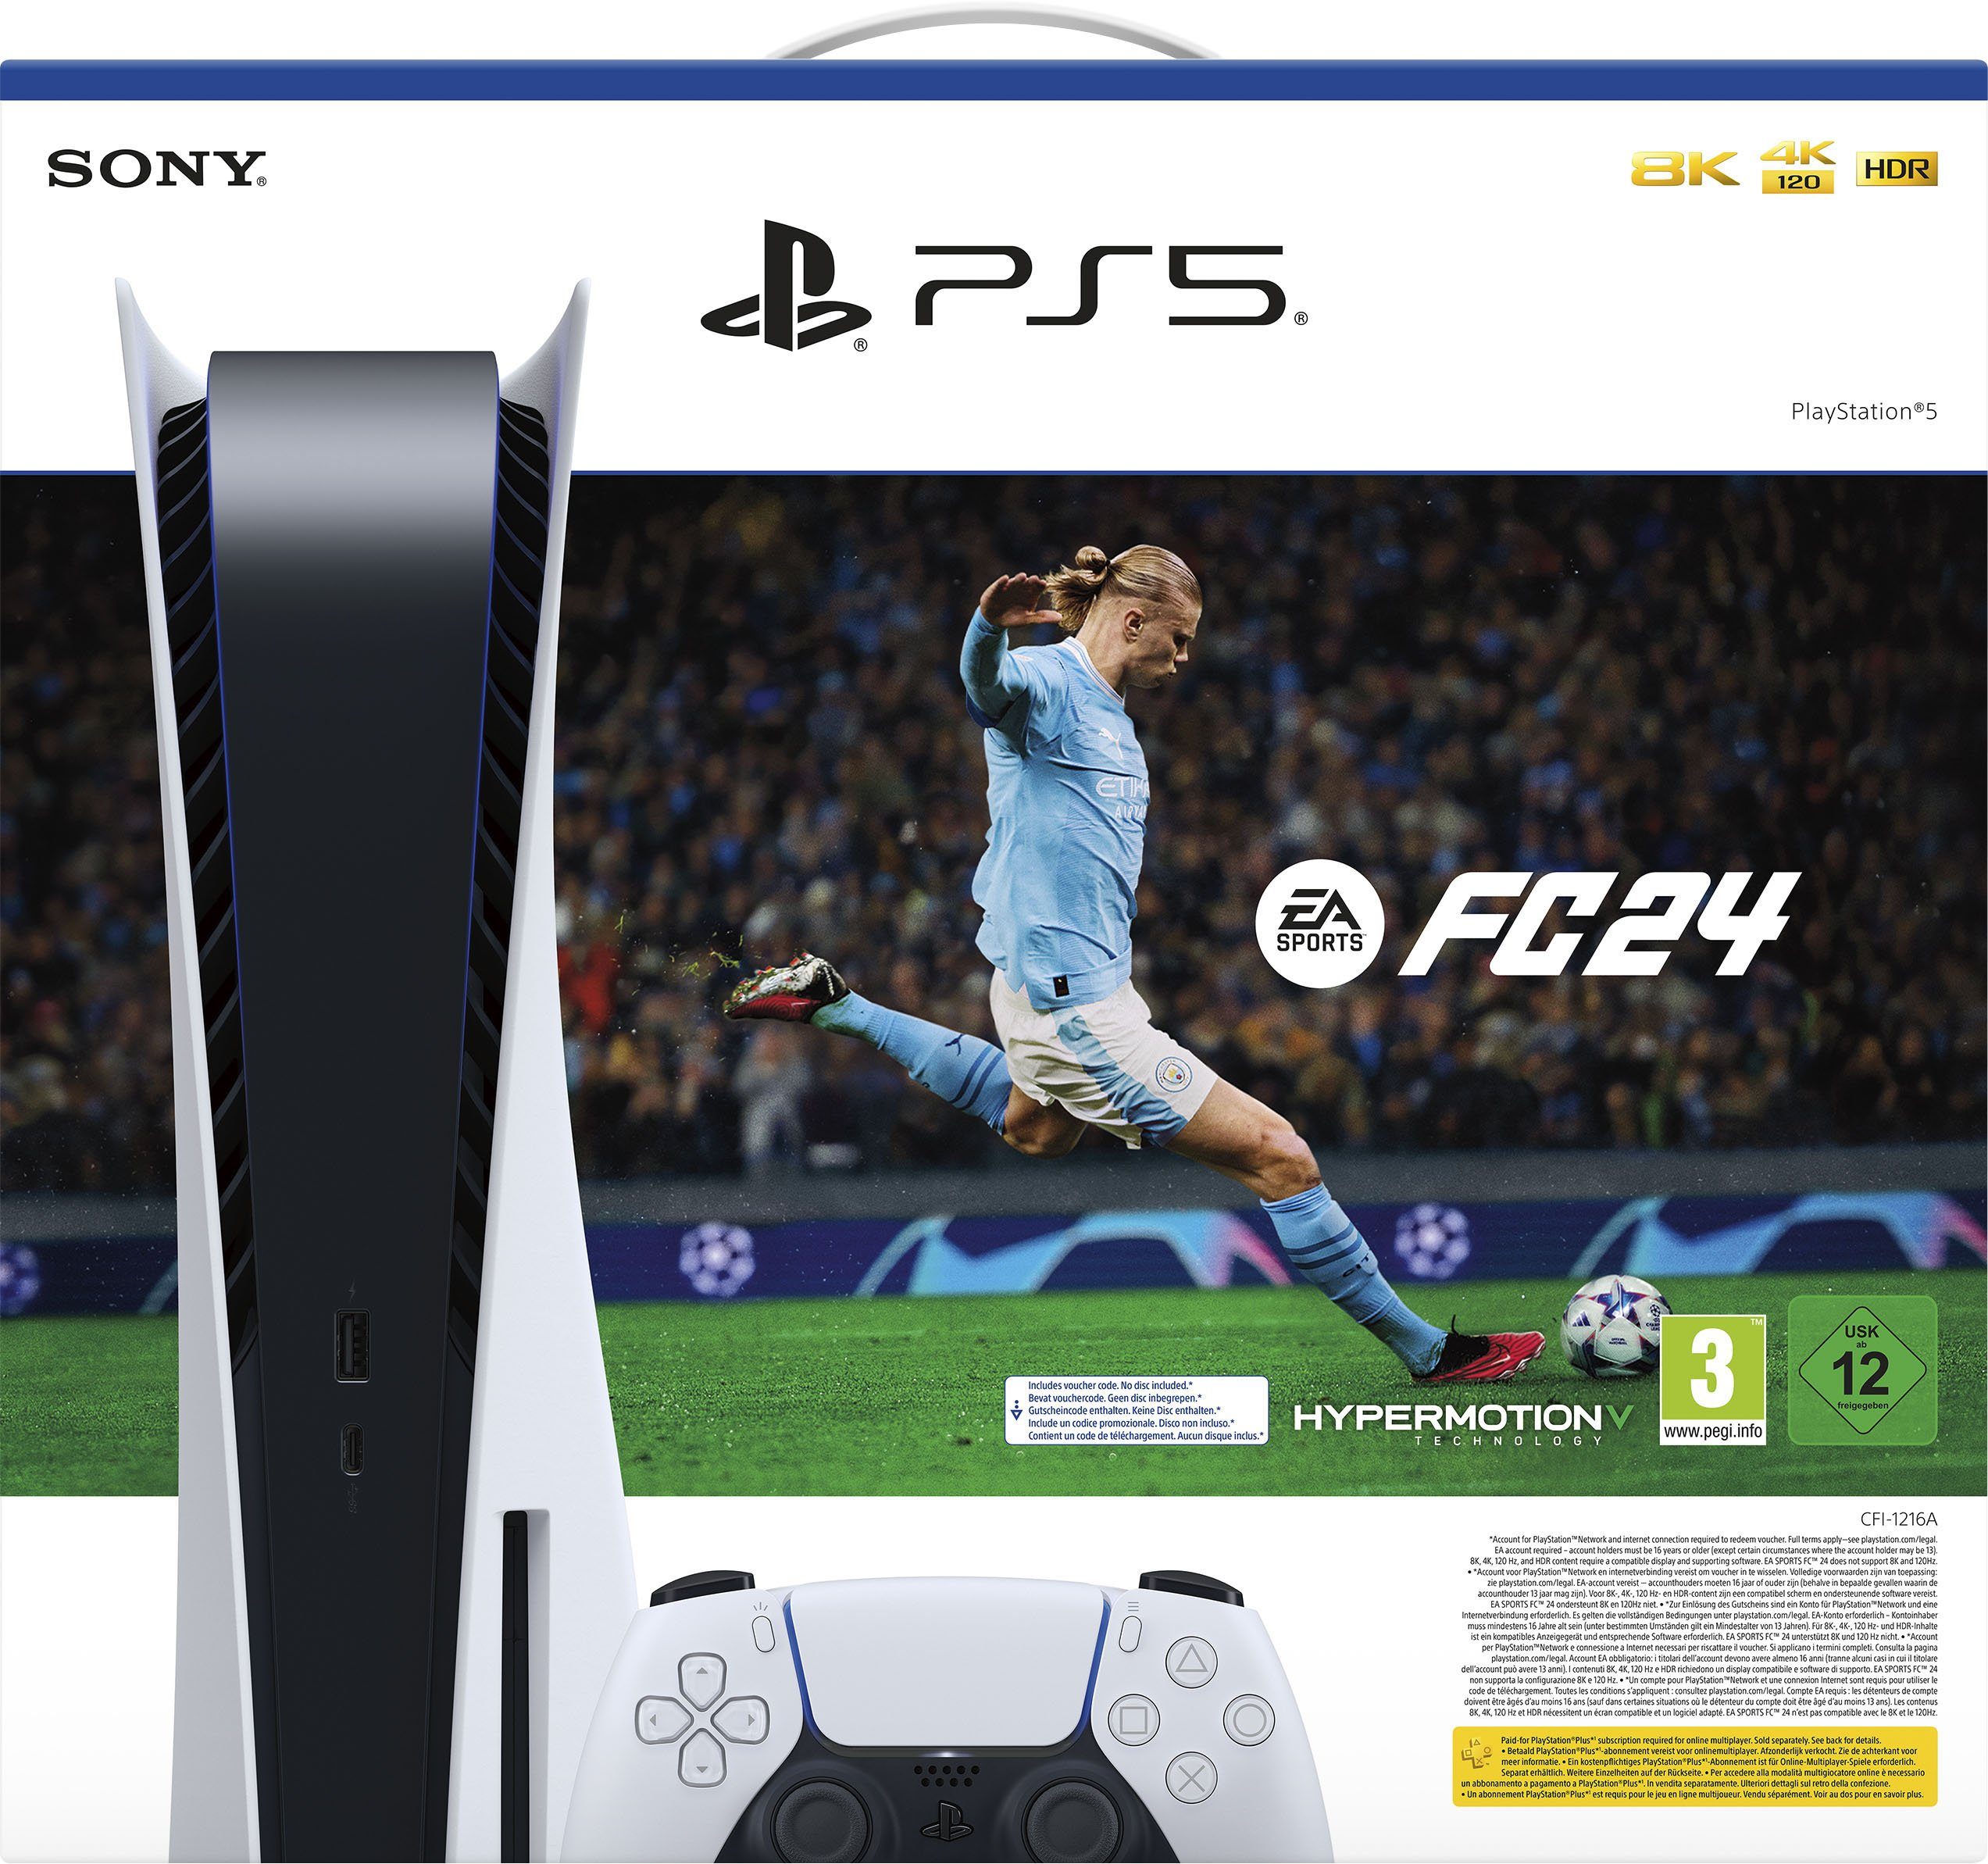 Sony PlayStation 5, Disk + (DLC) Sports Edition 24 EA FC